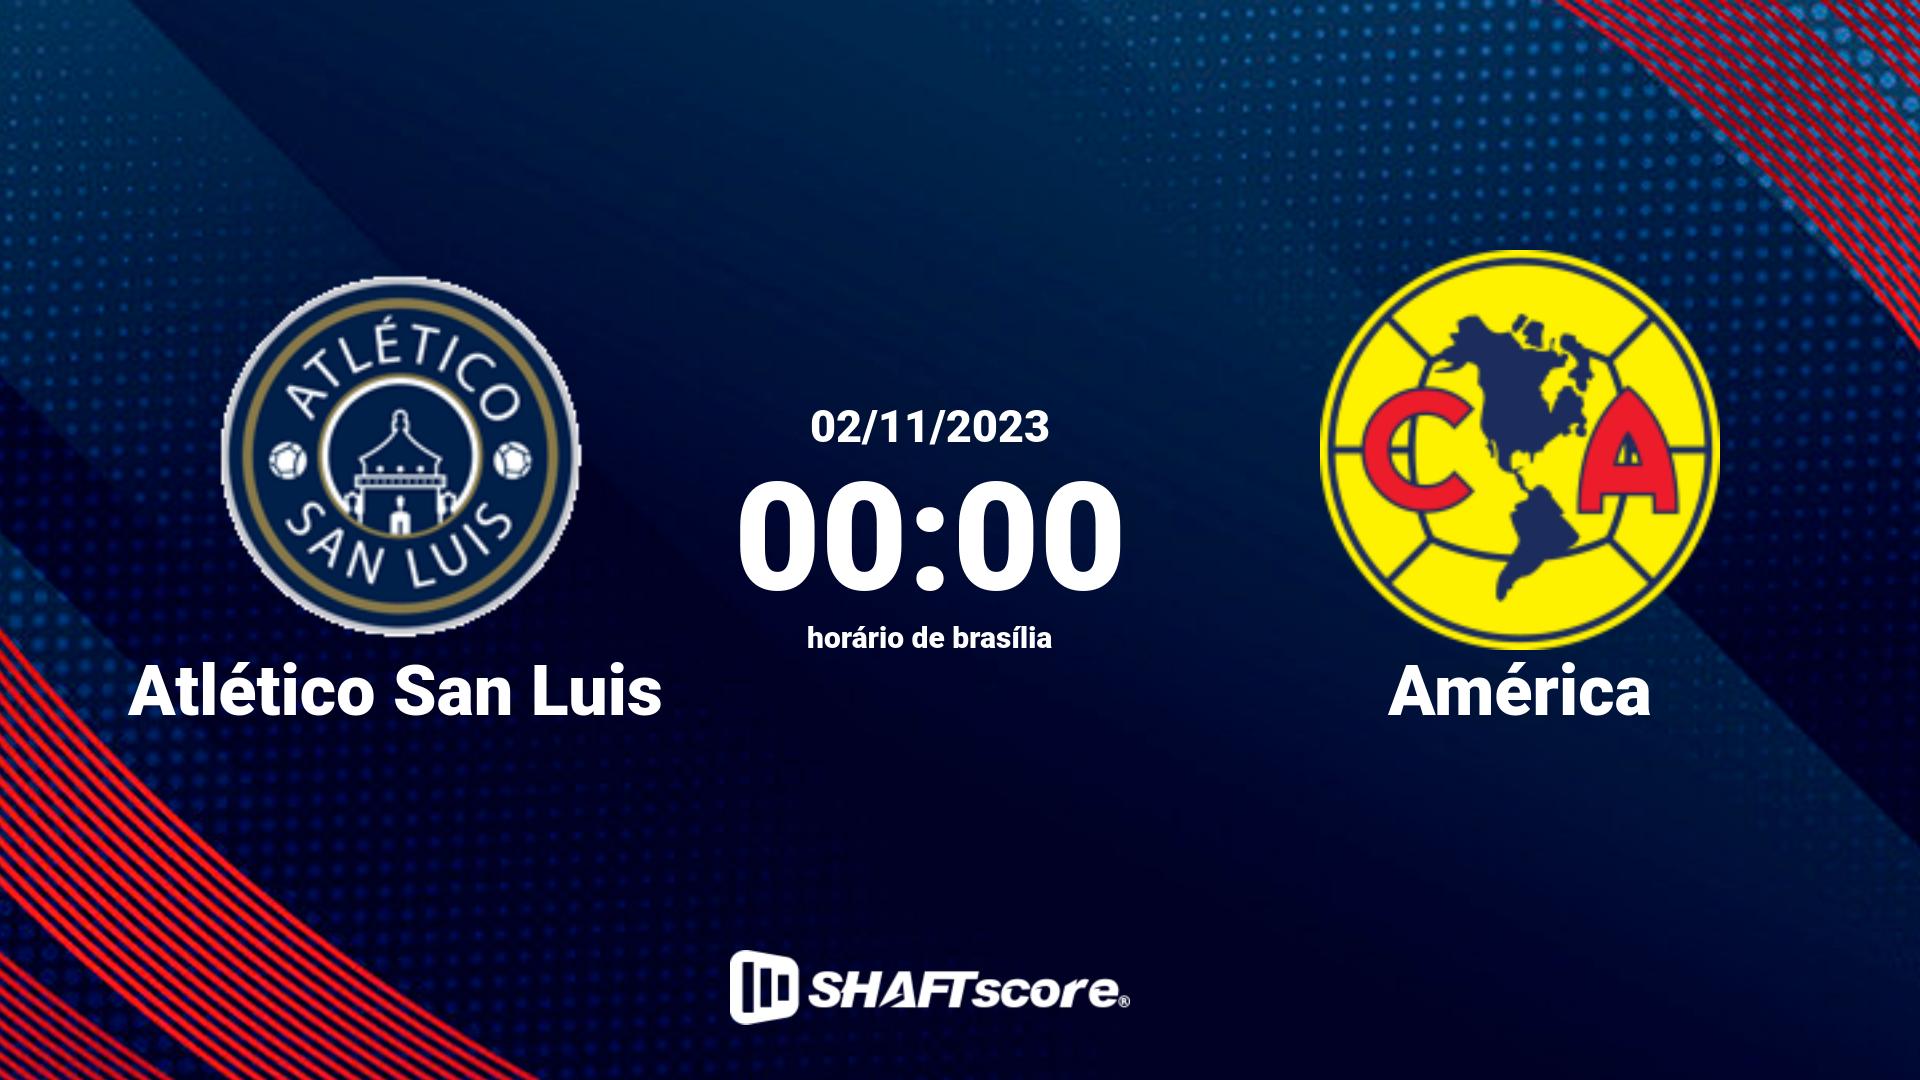 Estatísticas do jogo Atlético San Luis vs América 02.11 00:00